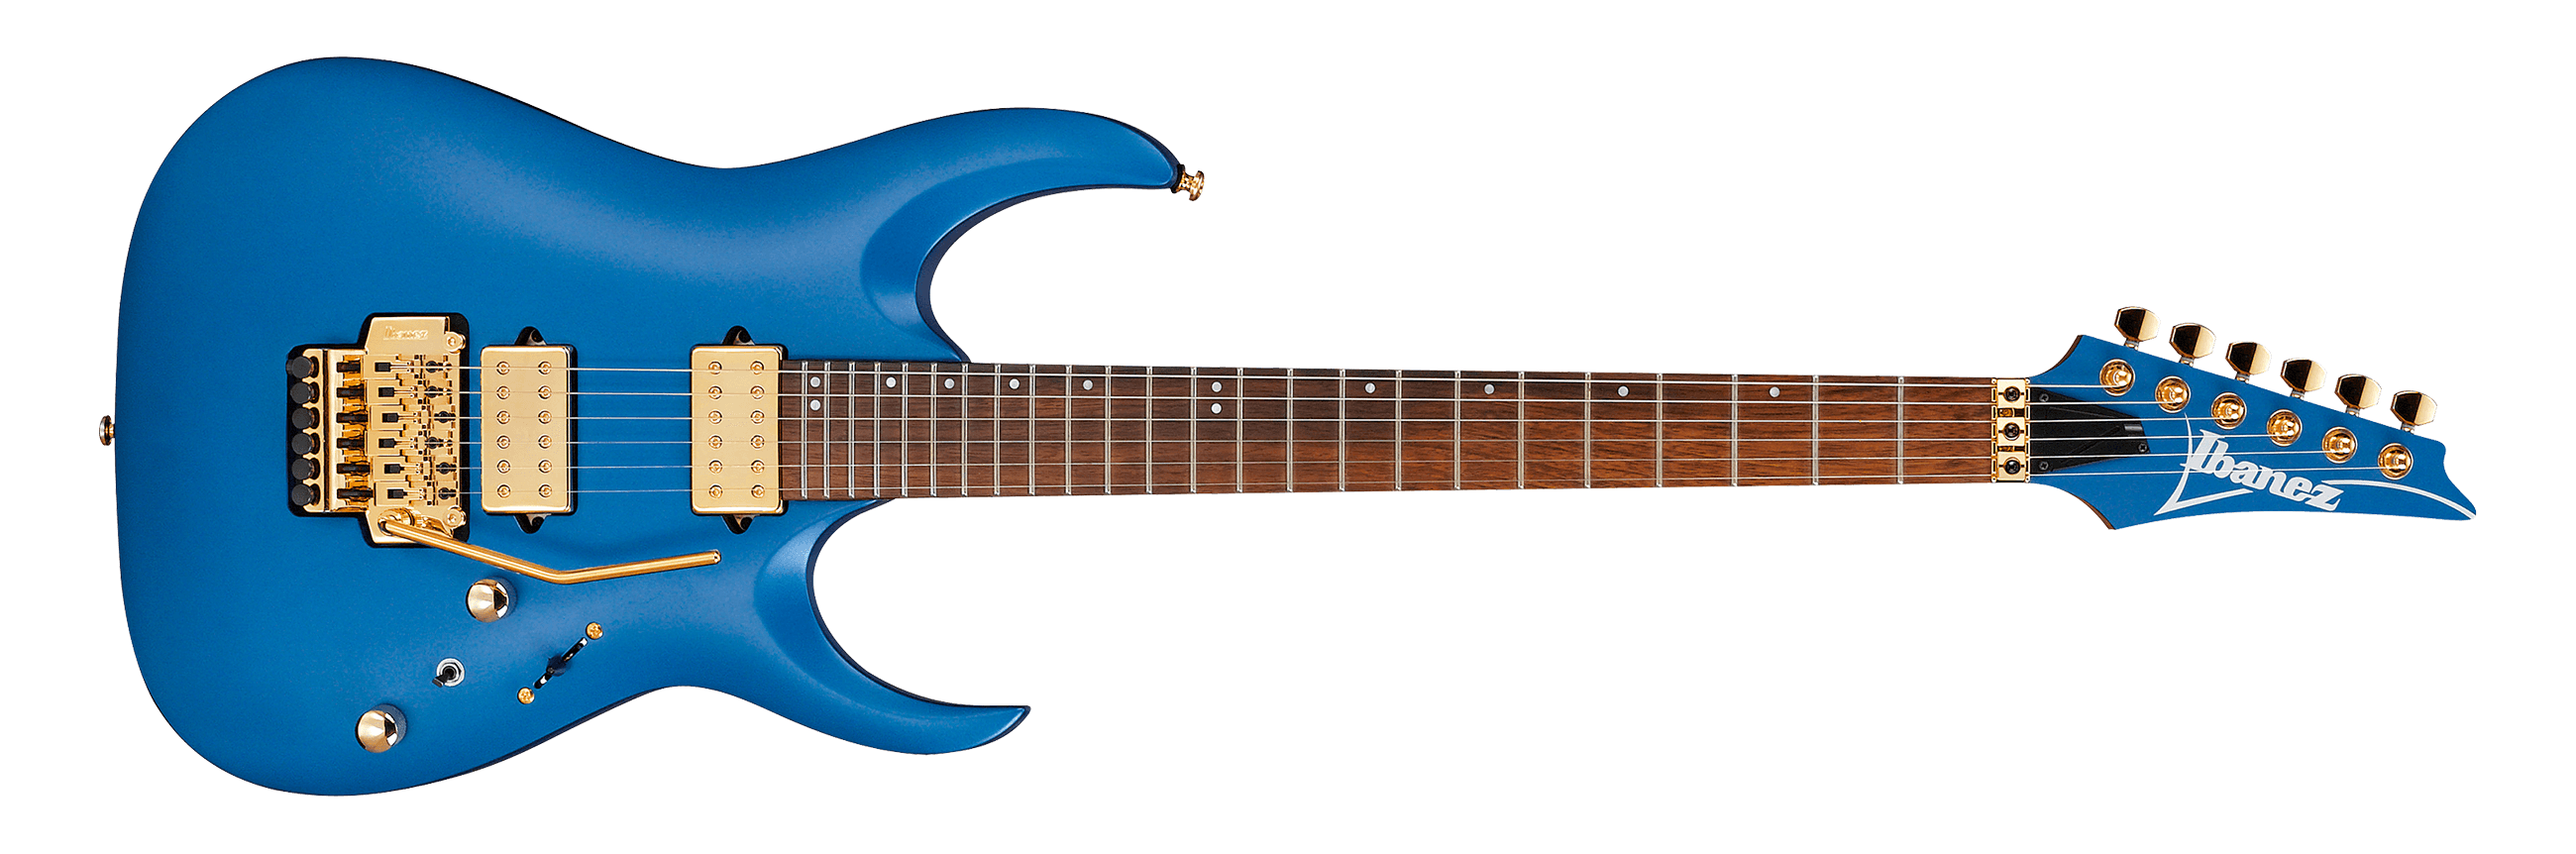 Ibañez - Guitarra Eléctrica RGA, Color: Azúl Mate Mod.RGA42HPT-LBM_3